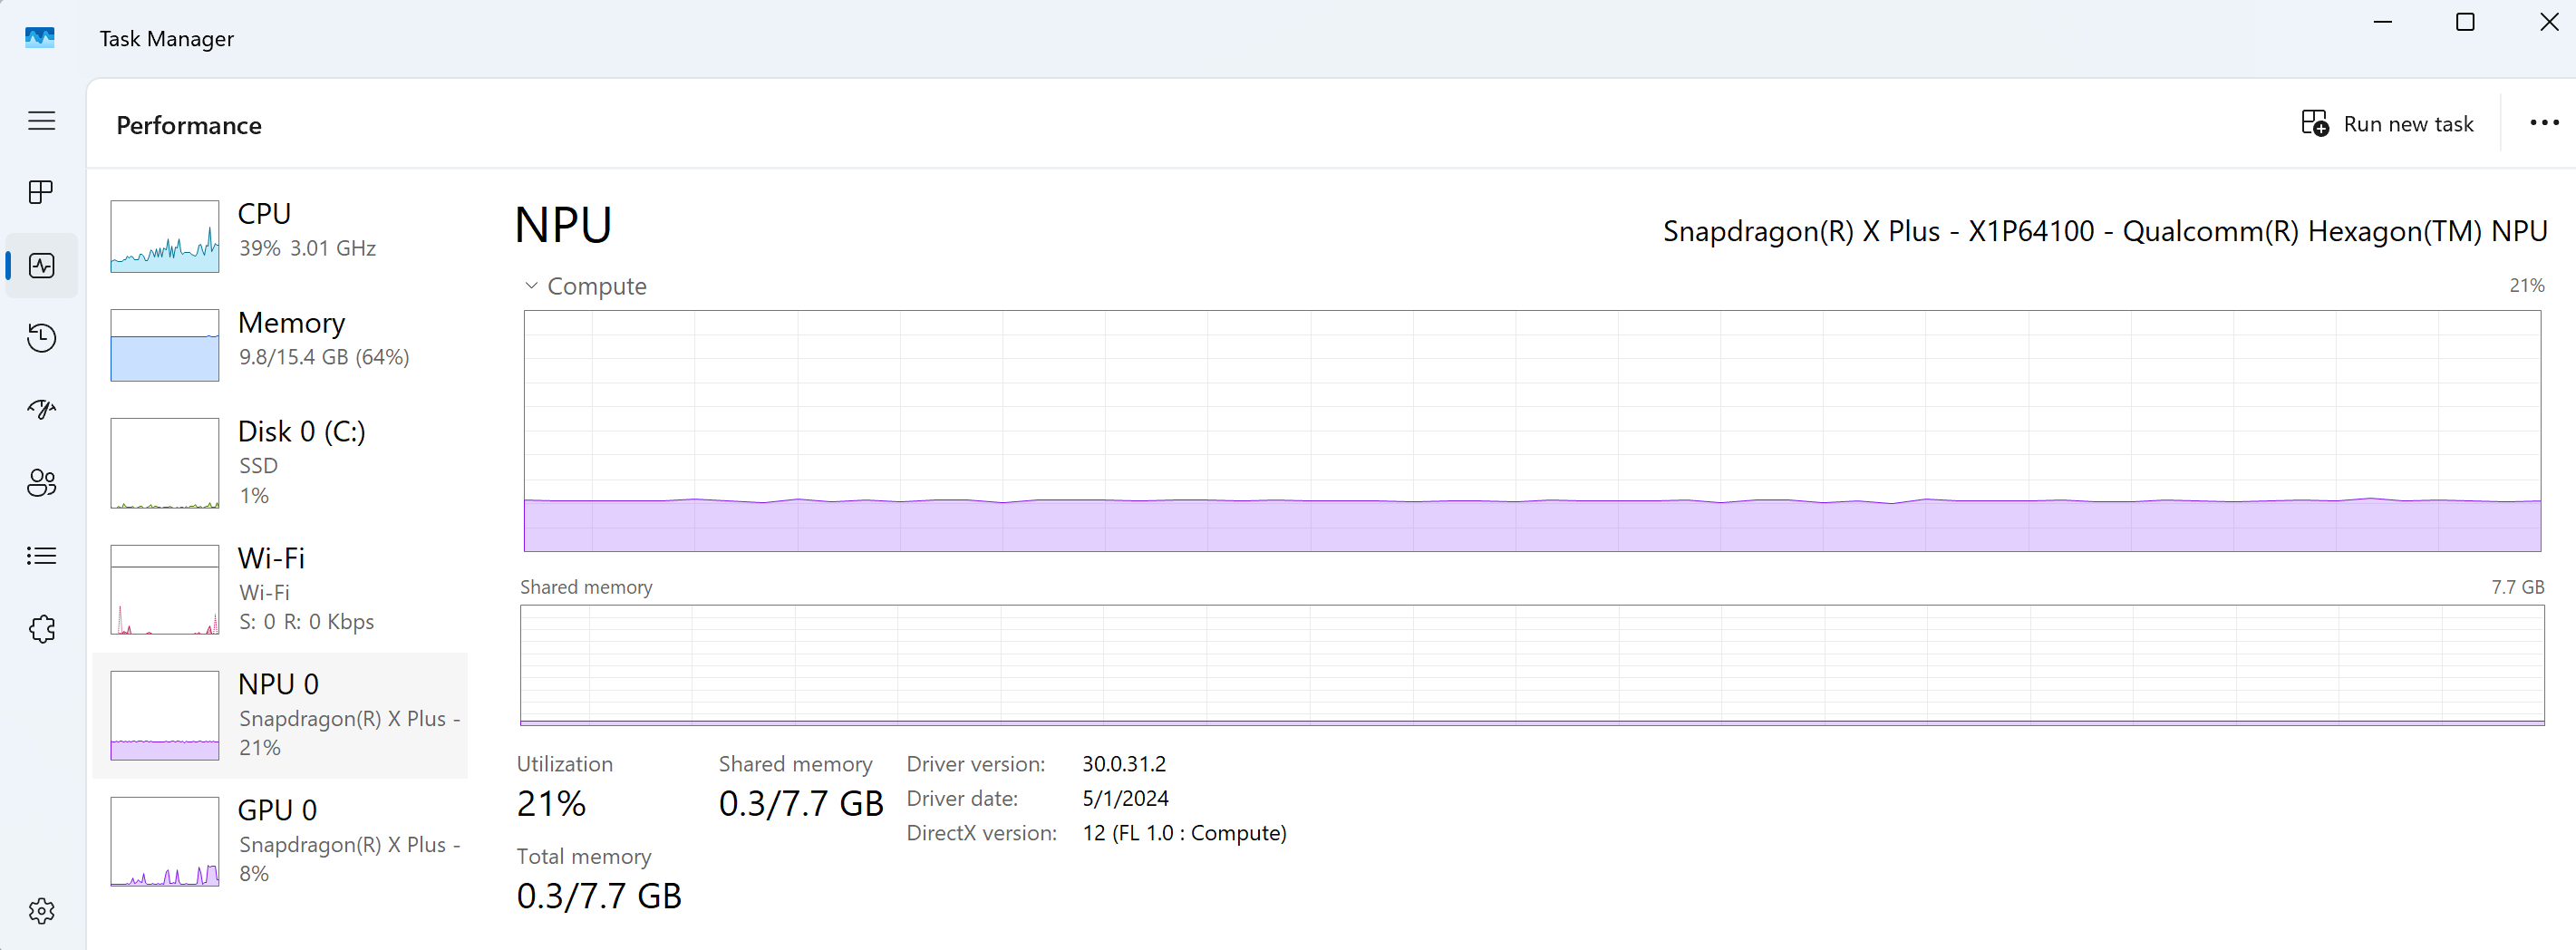 Captura de tela do Gerenciador de Tarefas do Windows exibindo o desempenho da NPU junto com CPU, GPU, Memória, Ethernet e Disco